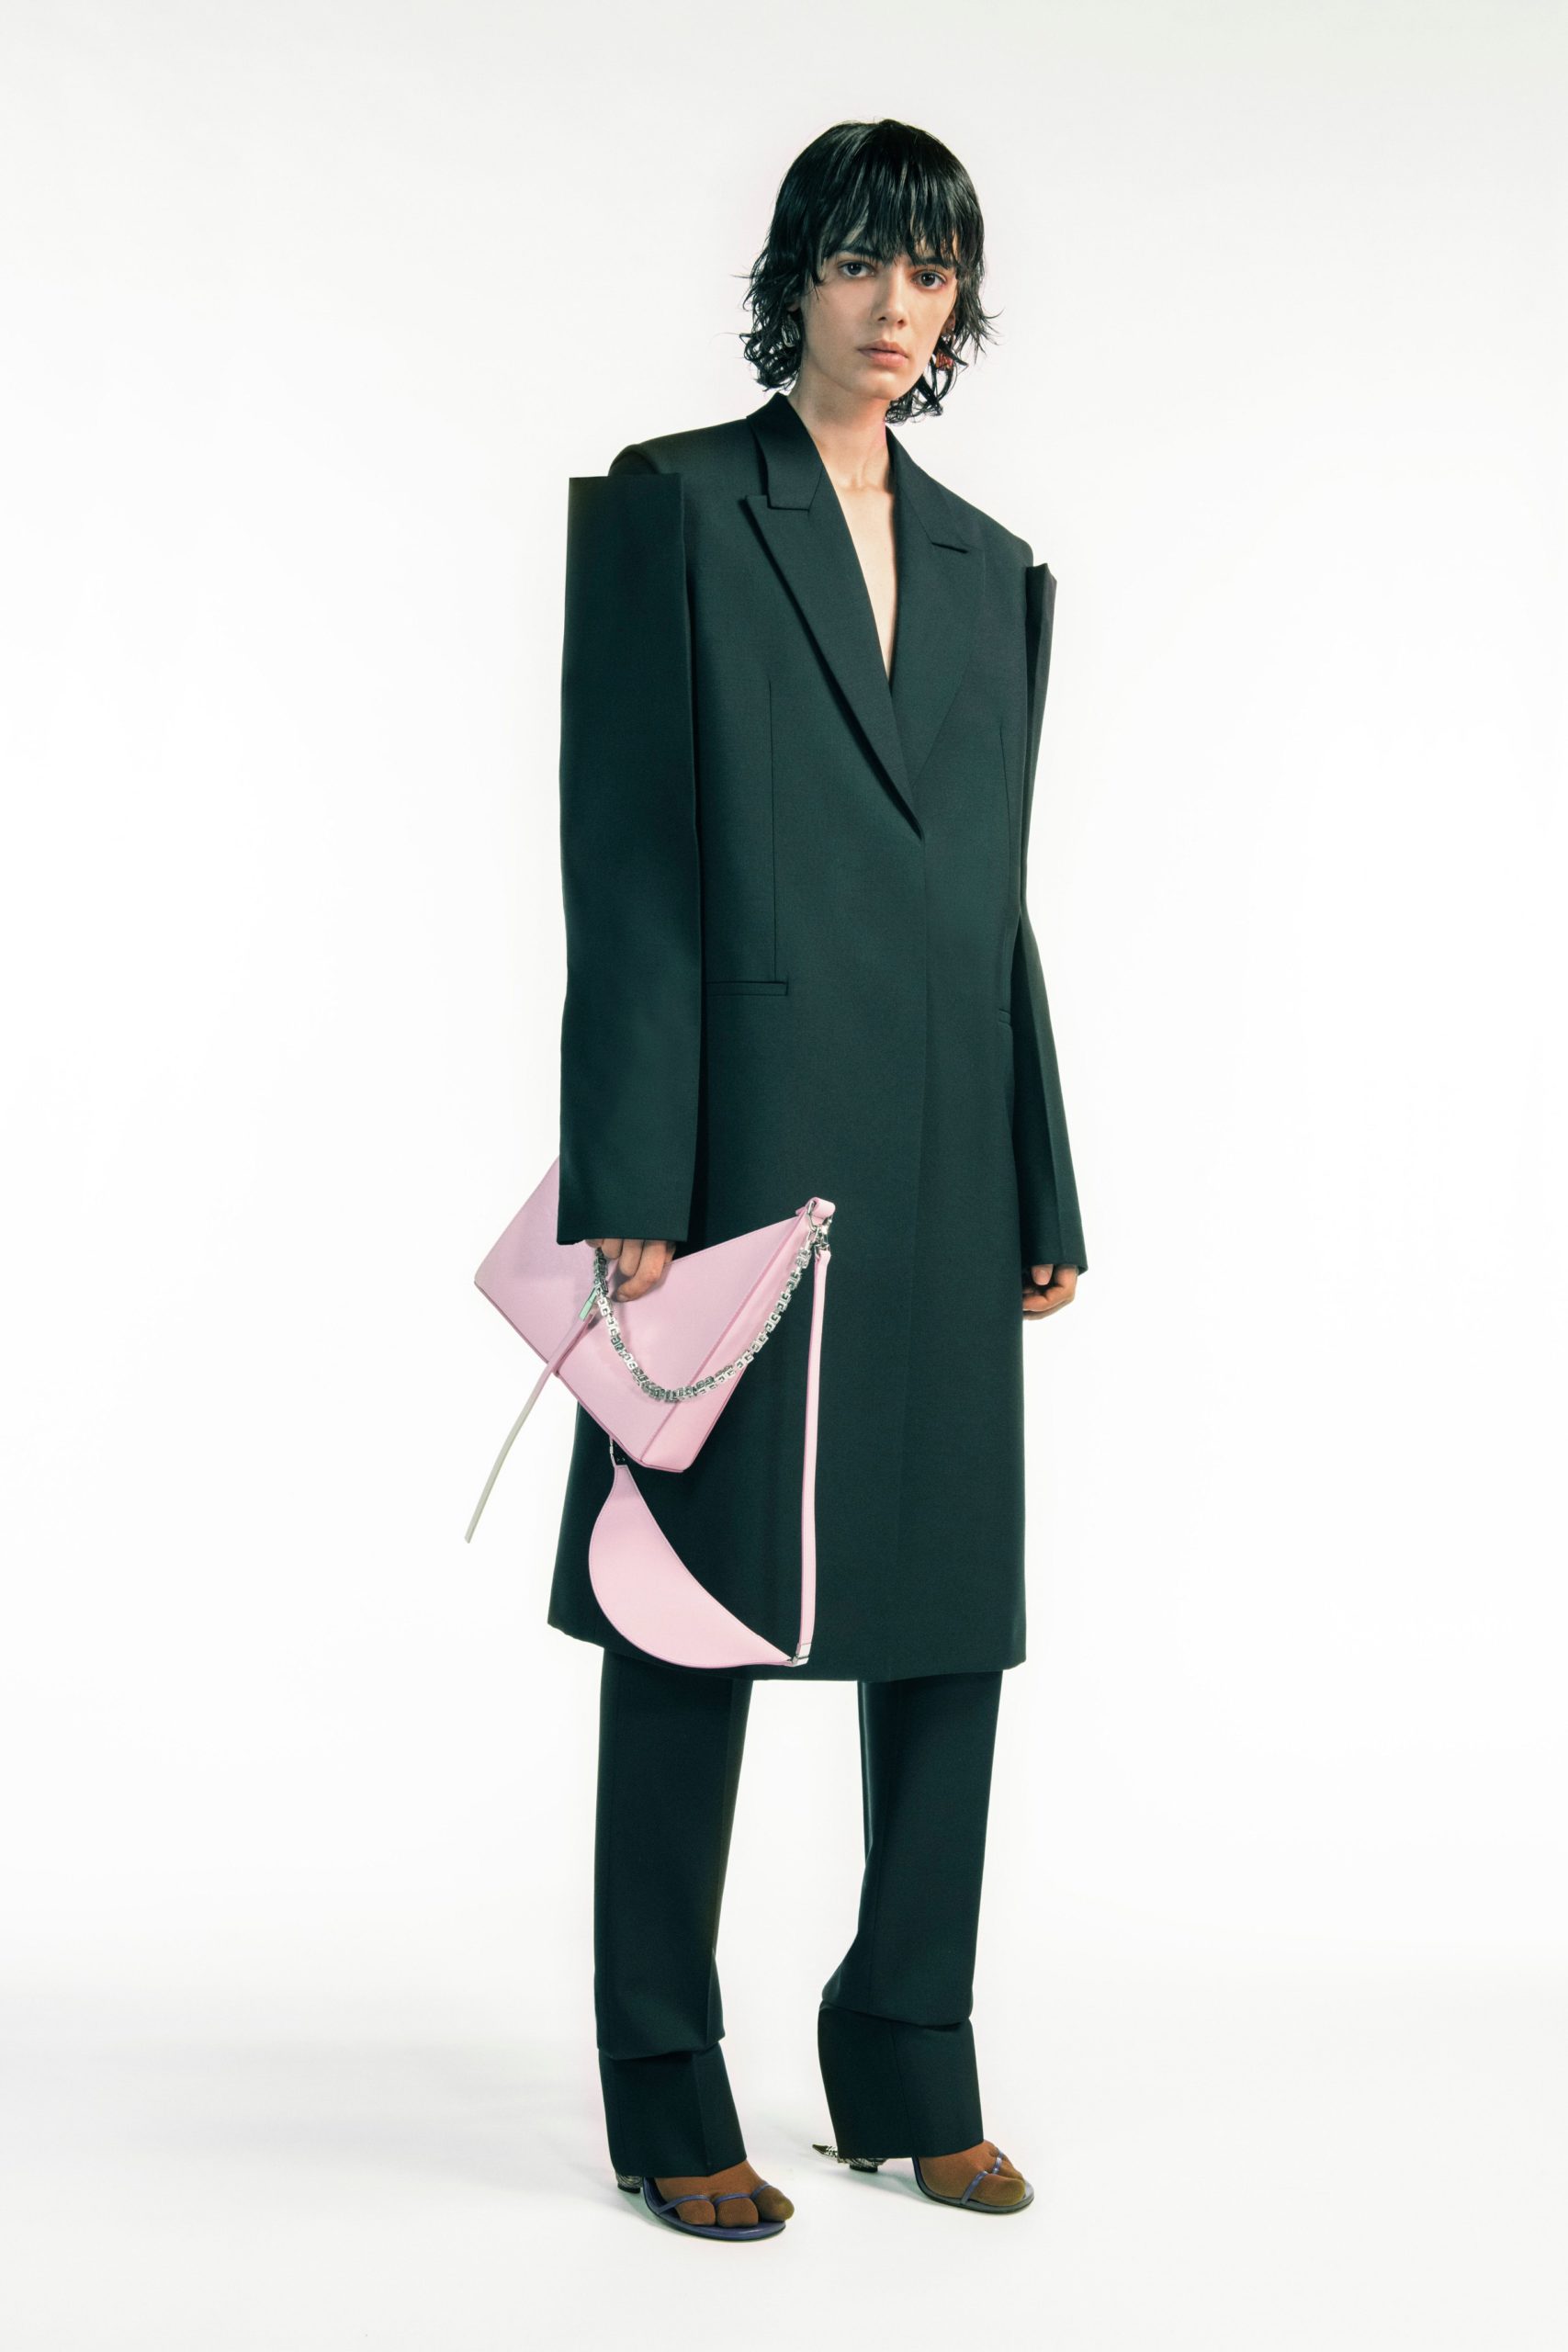 Прозрачные топы и туфли с шипами: первая коллекция Мэттью Уильямса для Givenchy 